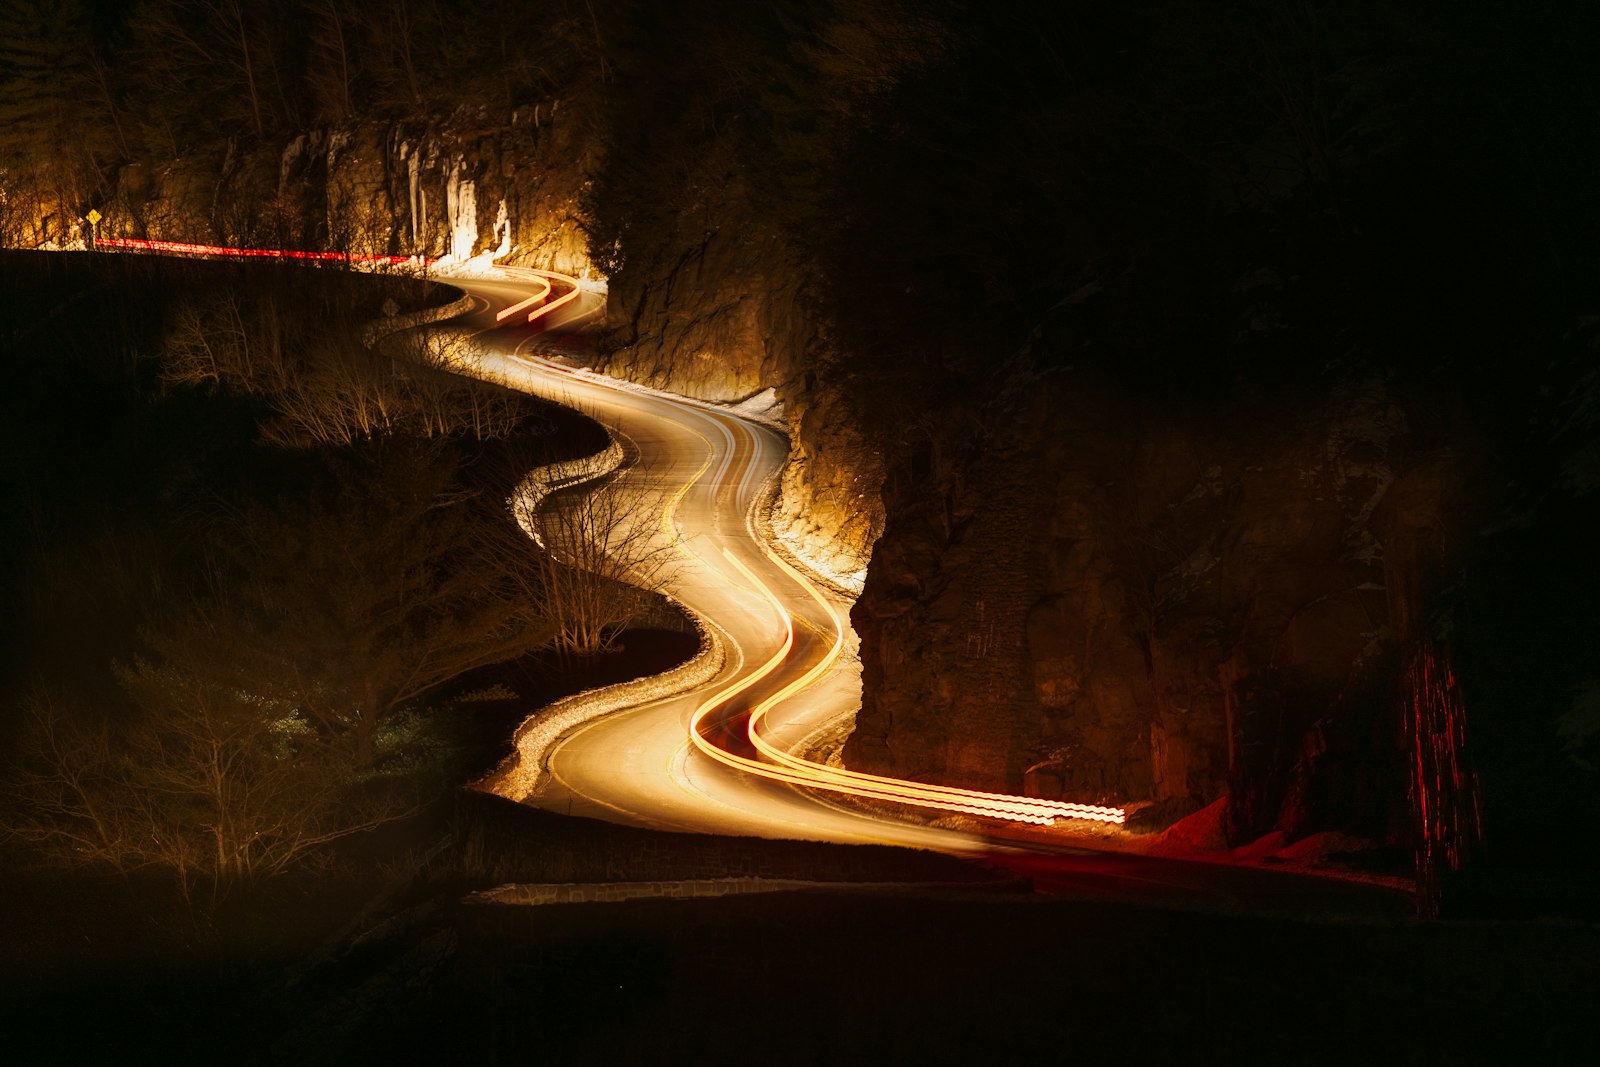 Nikon AF-S Nikkor 70-200mm F2.8E FL ED VR sample photo. Lighted road at night photography